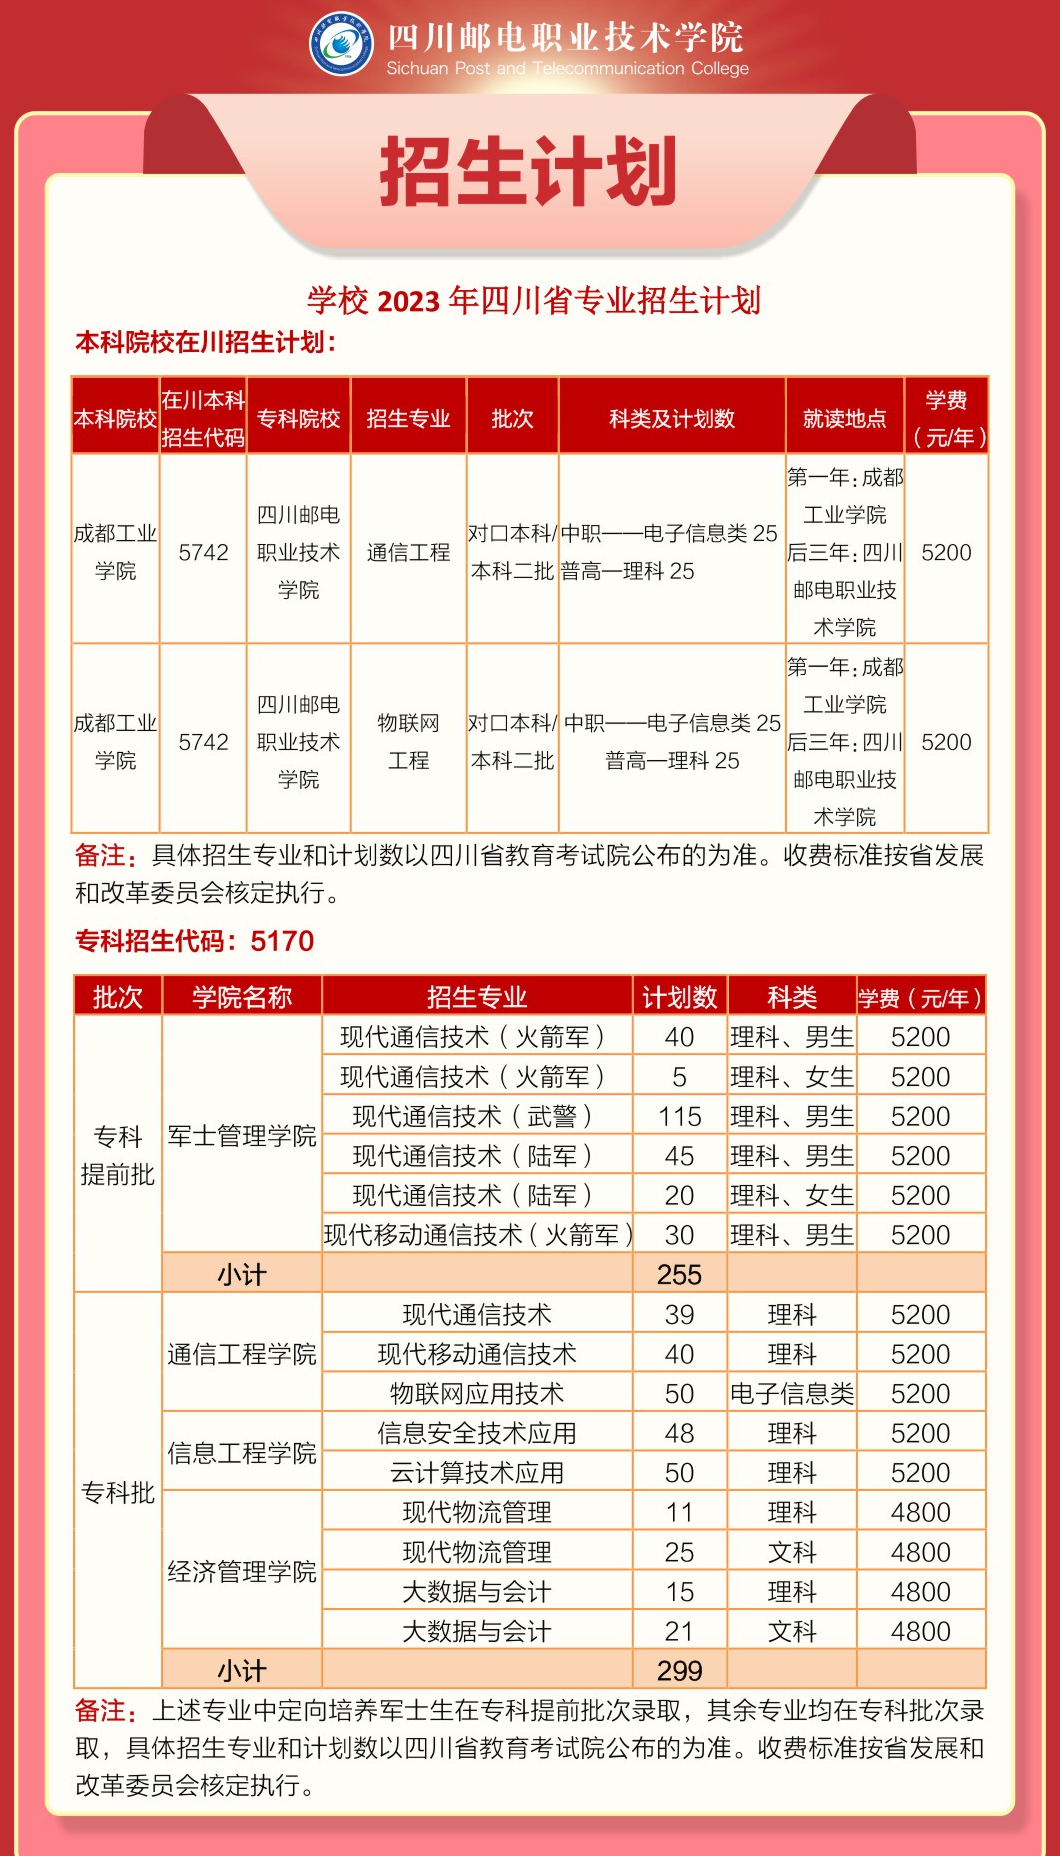 四川邮电职业技术学院学费多少钱一年-各专业收费标准